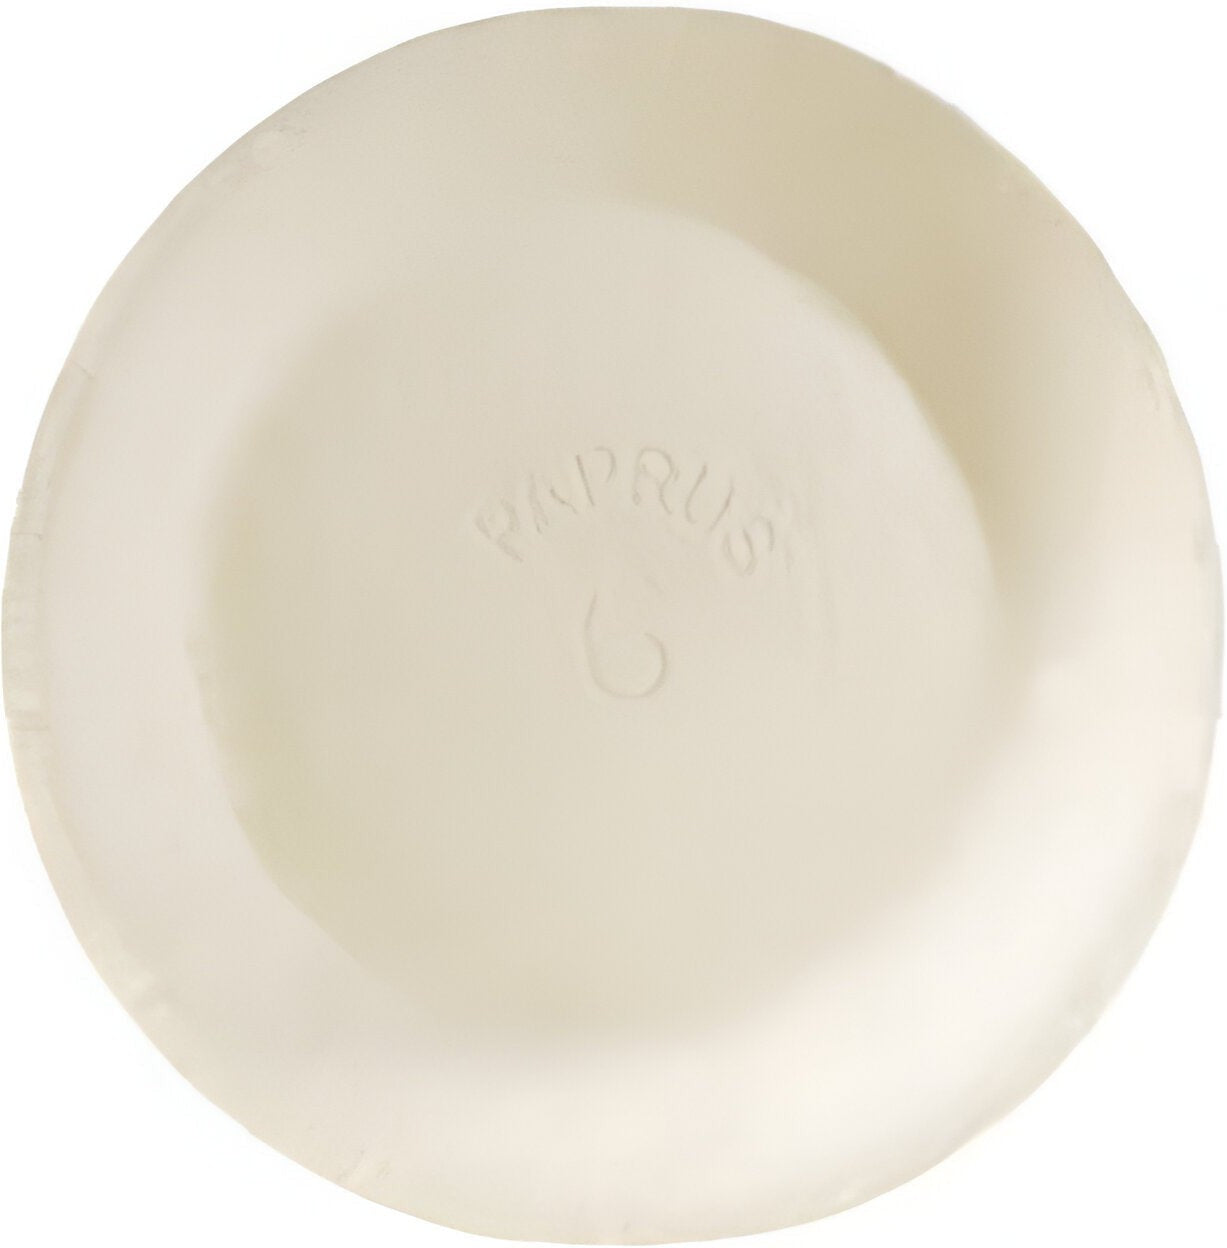 CKF Inc. - 6" Paprus Pie Plate, 1000/cs - 21016